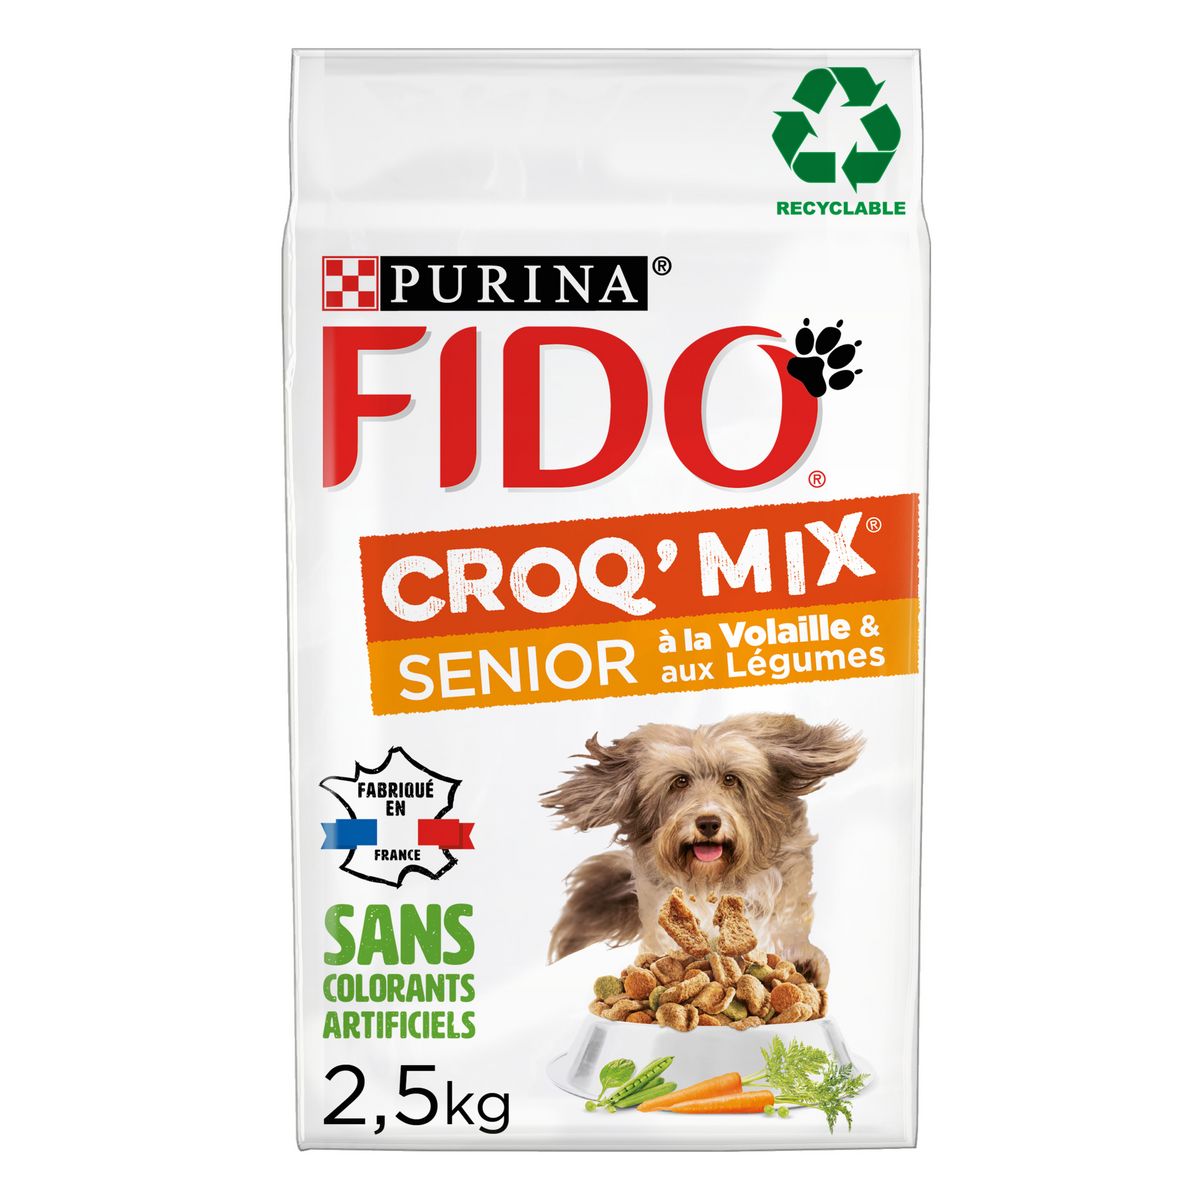 FIDO Croq'mix croquettes volaille et légumes pour chien sénior 2,5kg